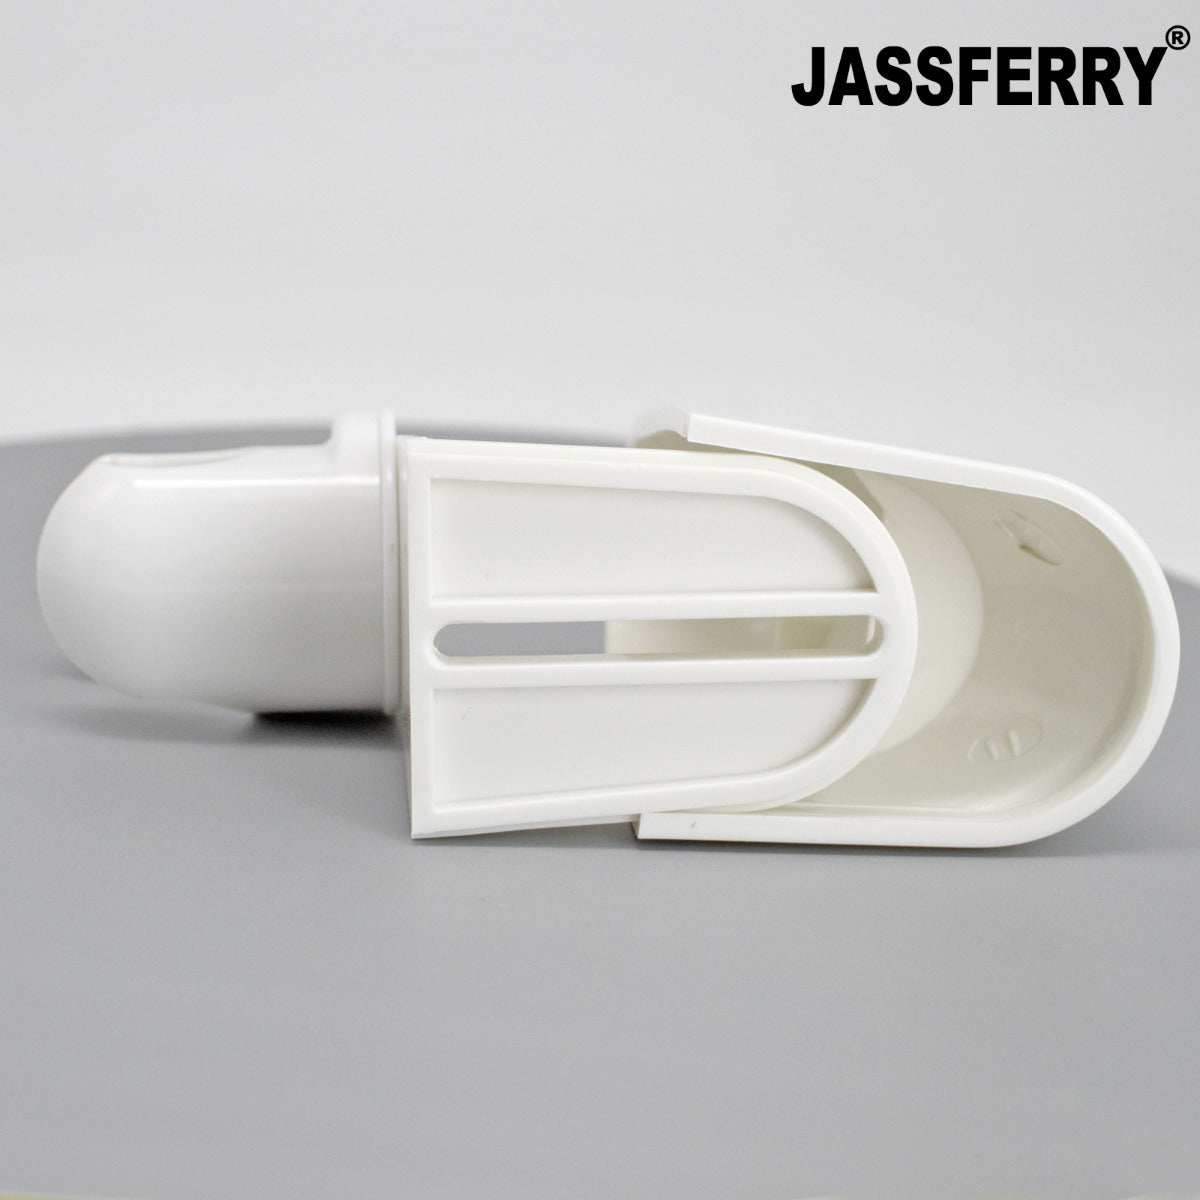 JassferryJASSFERRY Replacement Adjustable Wall Bracket Shower Head Hose Holder WhiteShower Heads